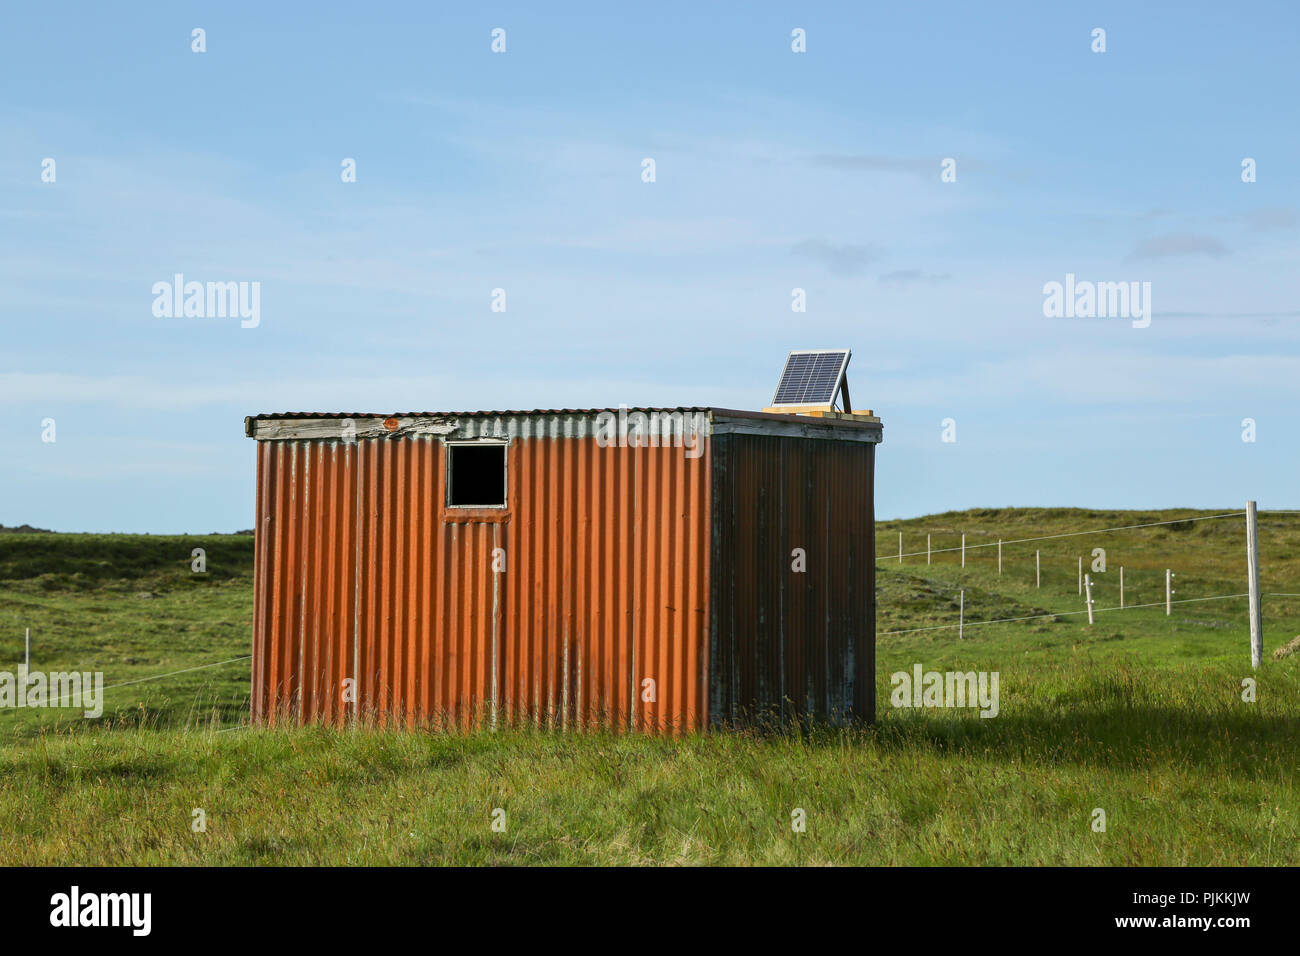 Island, einsam, Wellblech Hütte, Solarsystem, kleines Fenster Stockfoto